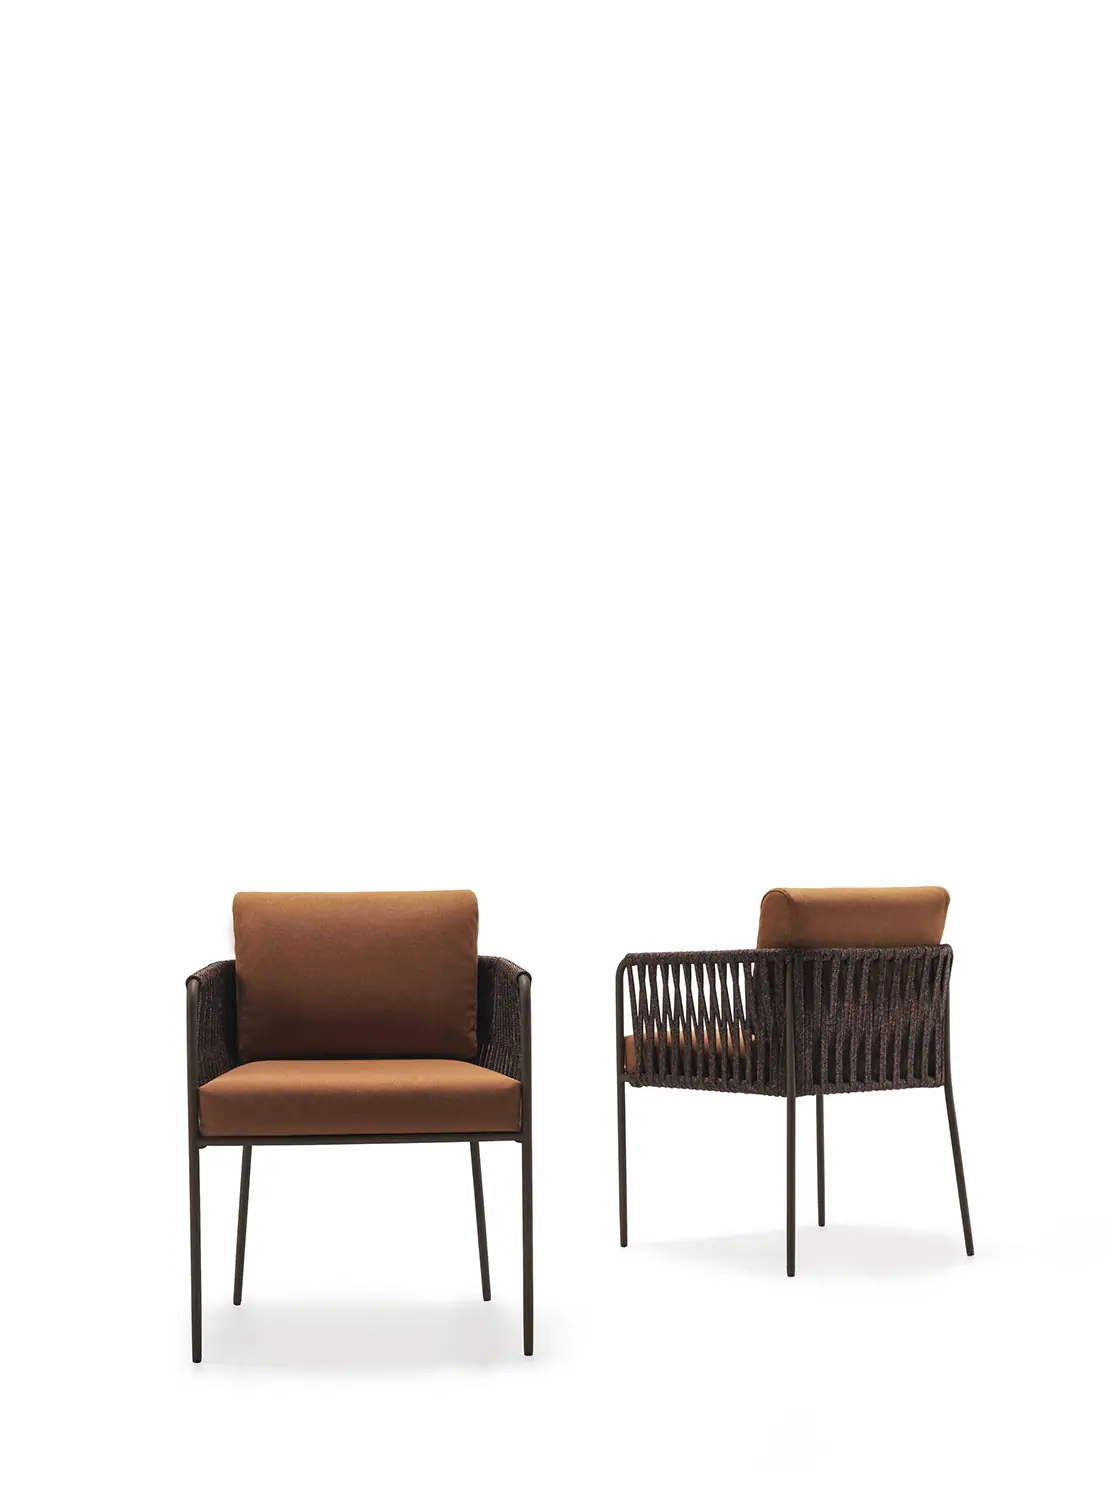 35939-15450-nido-seating-collection